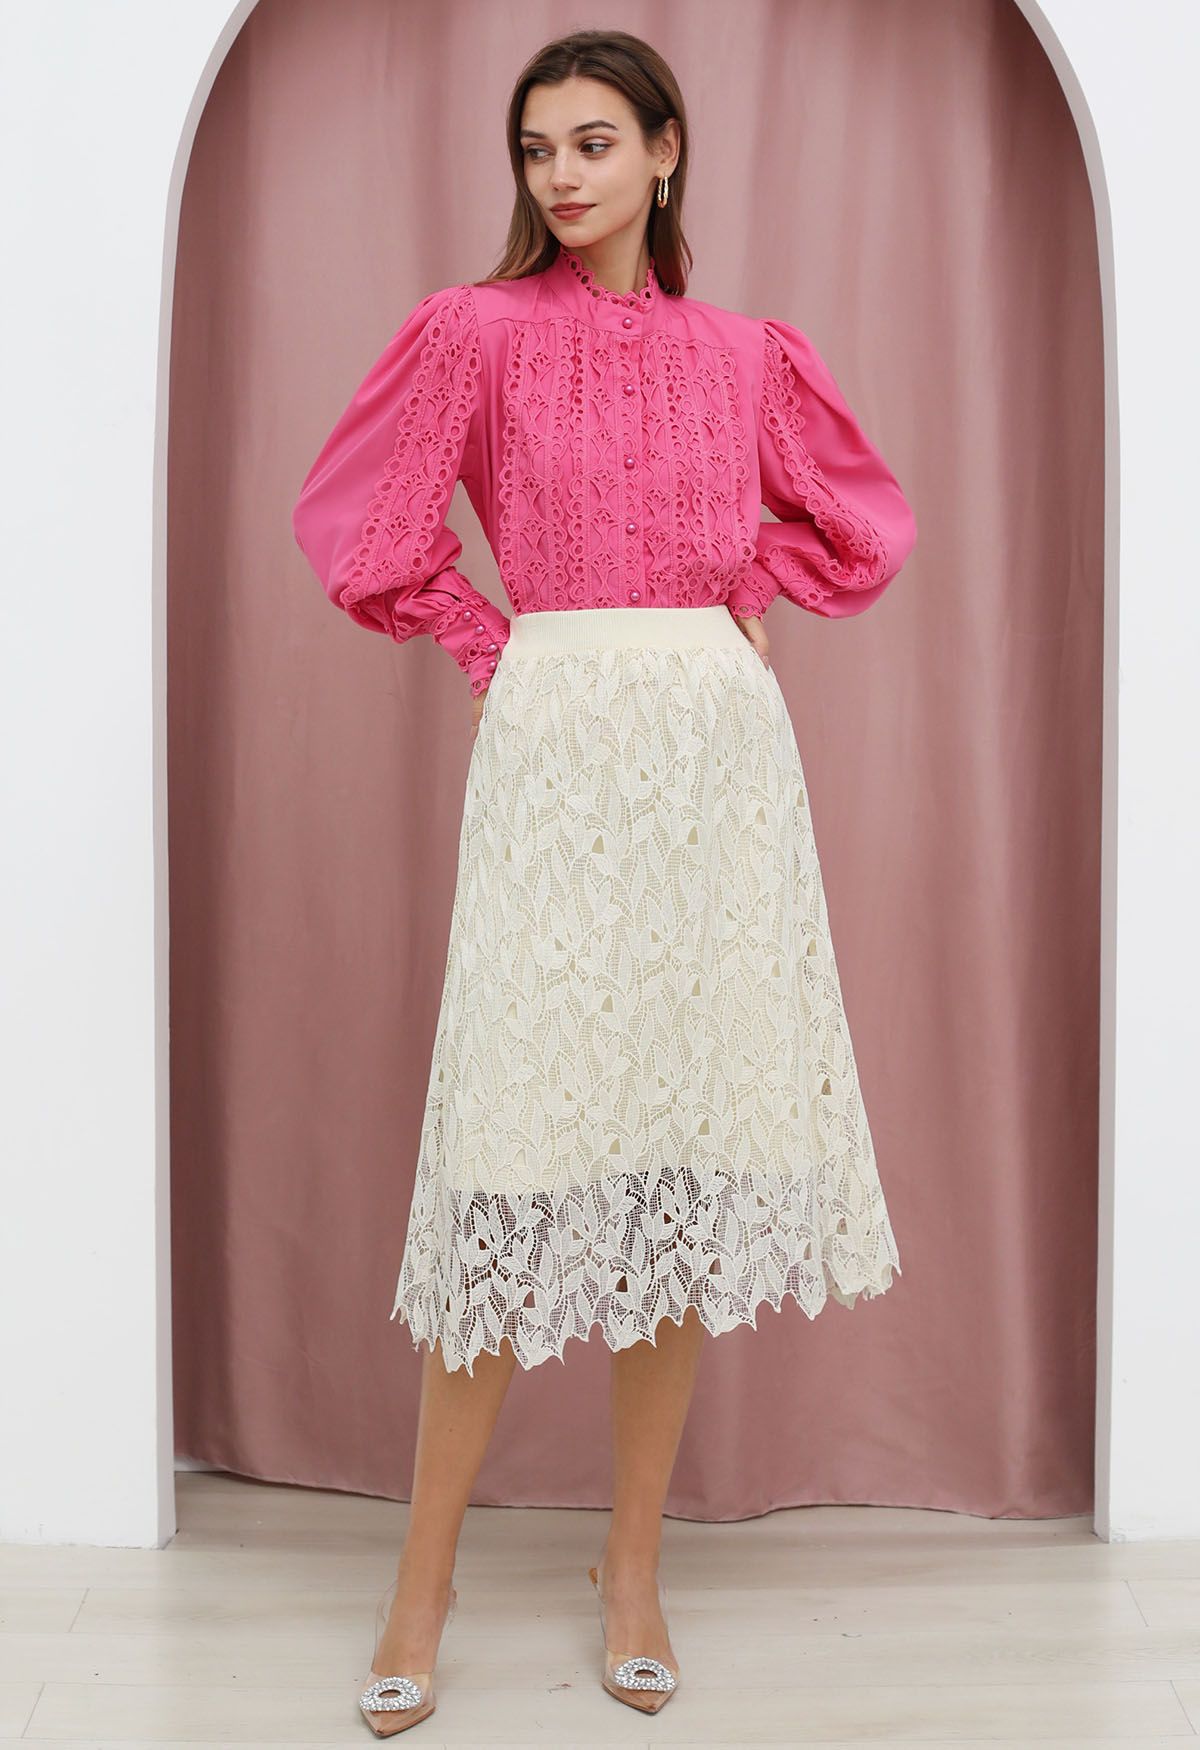 Falda midi de punto con superposición de encaje calado en color crema